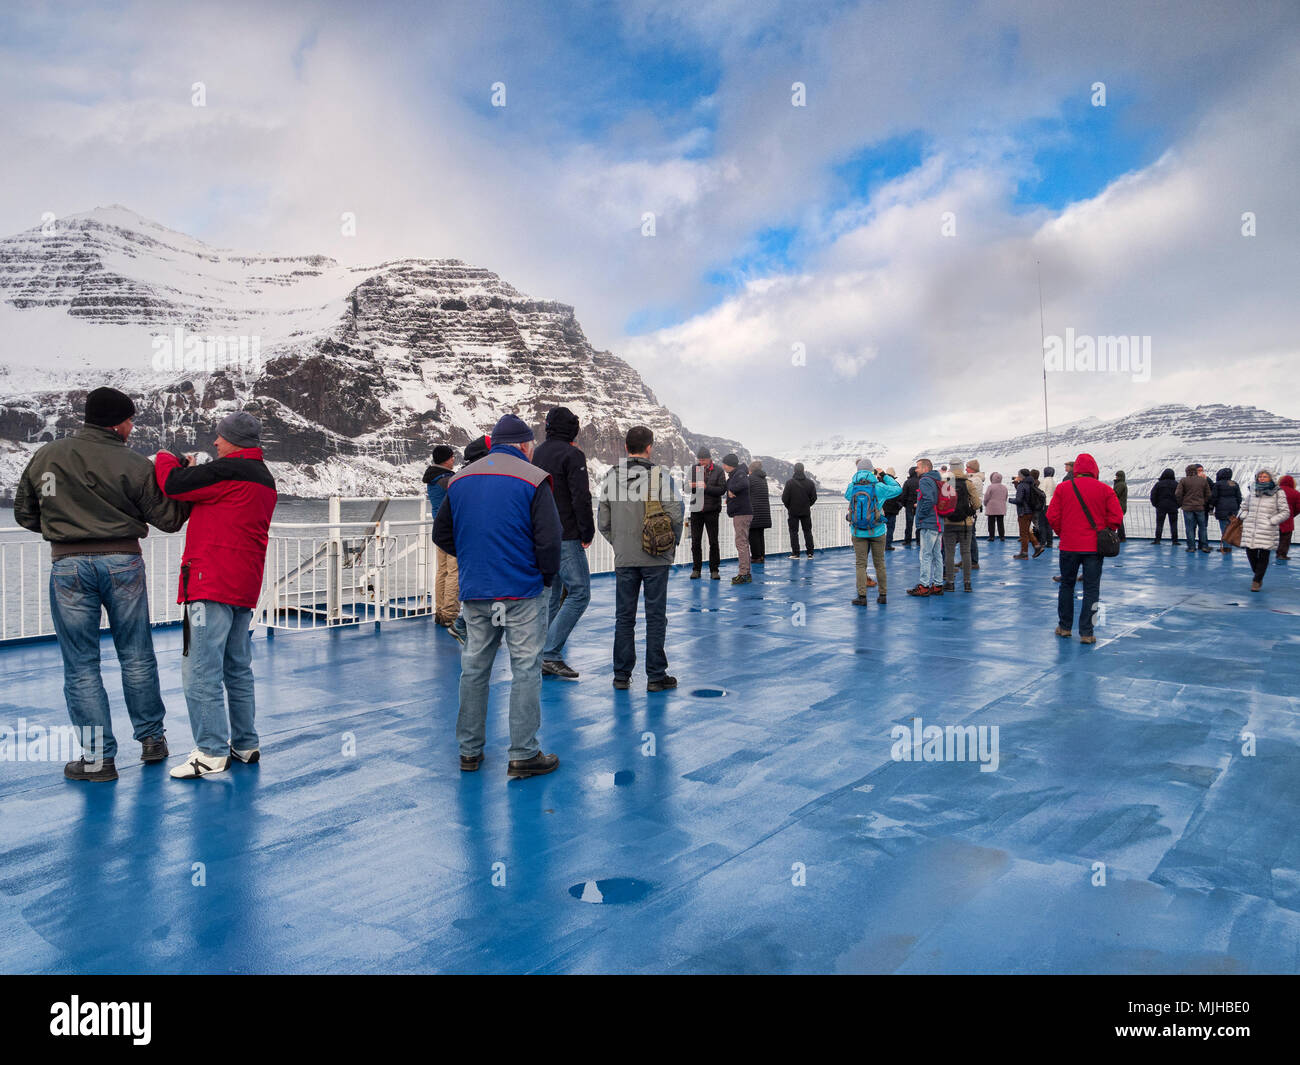 10 avril 2018 : l'Islande - Fjords de l'Est, les passagers du traversier MS Norrona se rassemblent sur le pont pour leur première vue de l'Islande. Banque D'Images